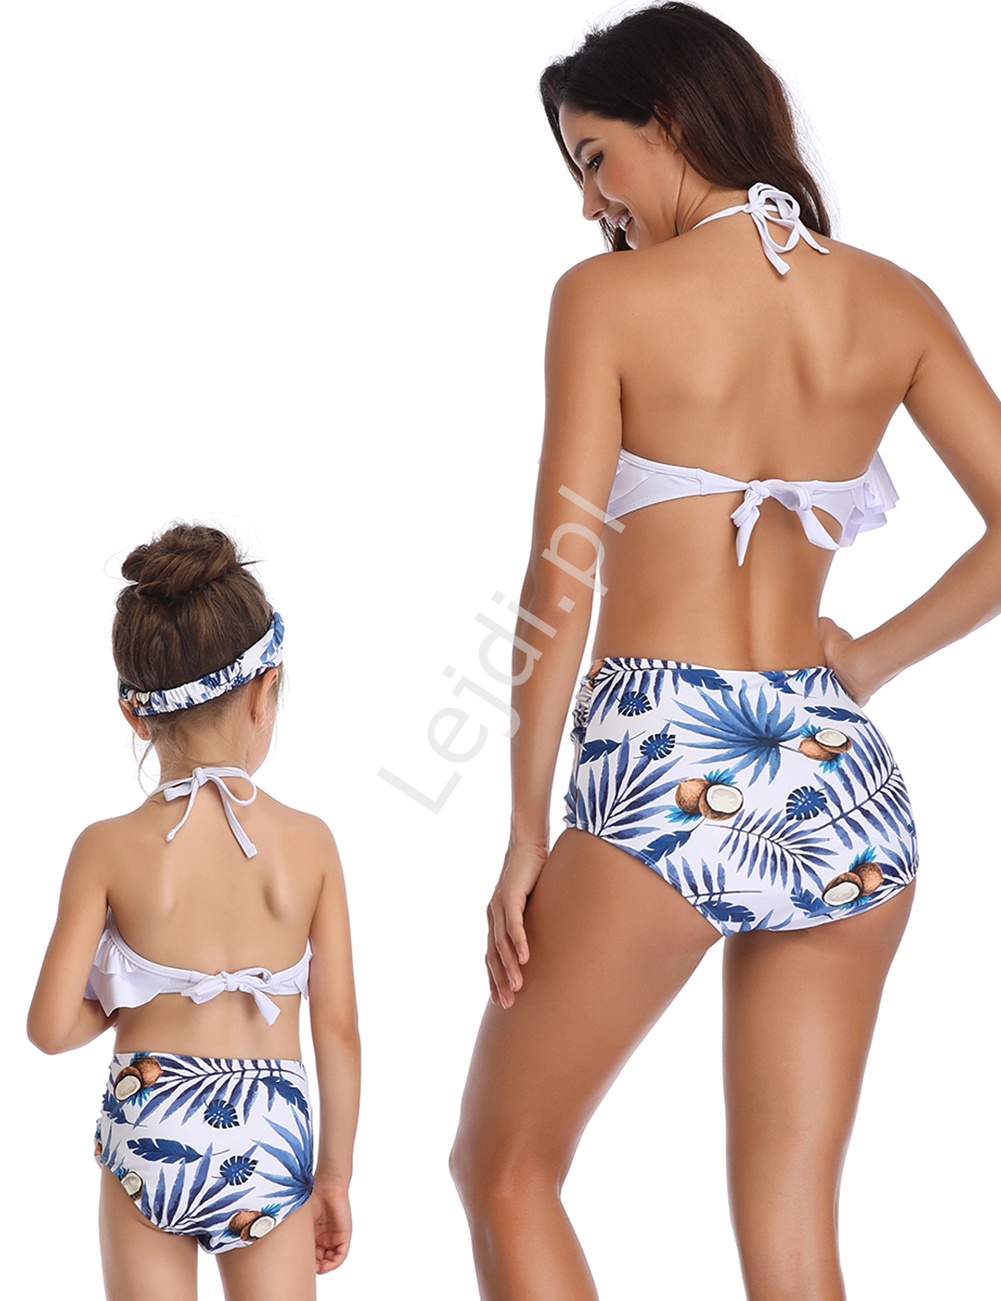 Bikini mama i córka z listkami palmowymi oraz kokosami